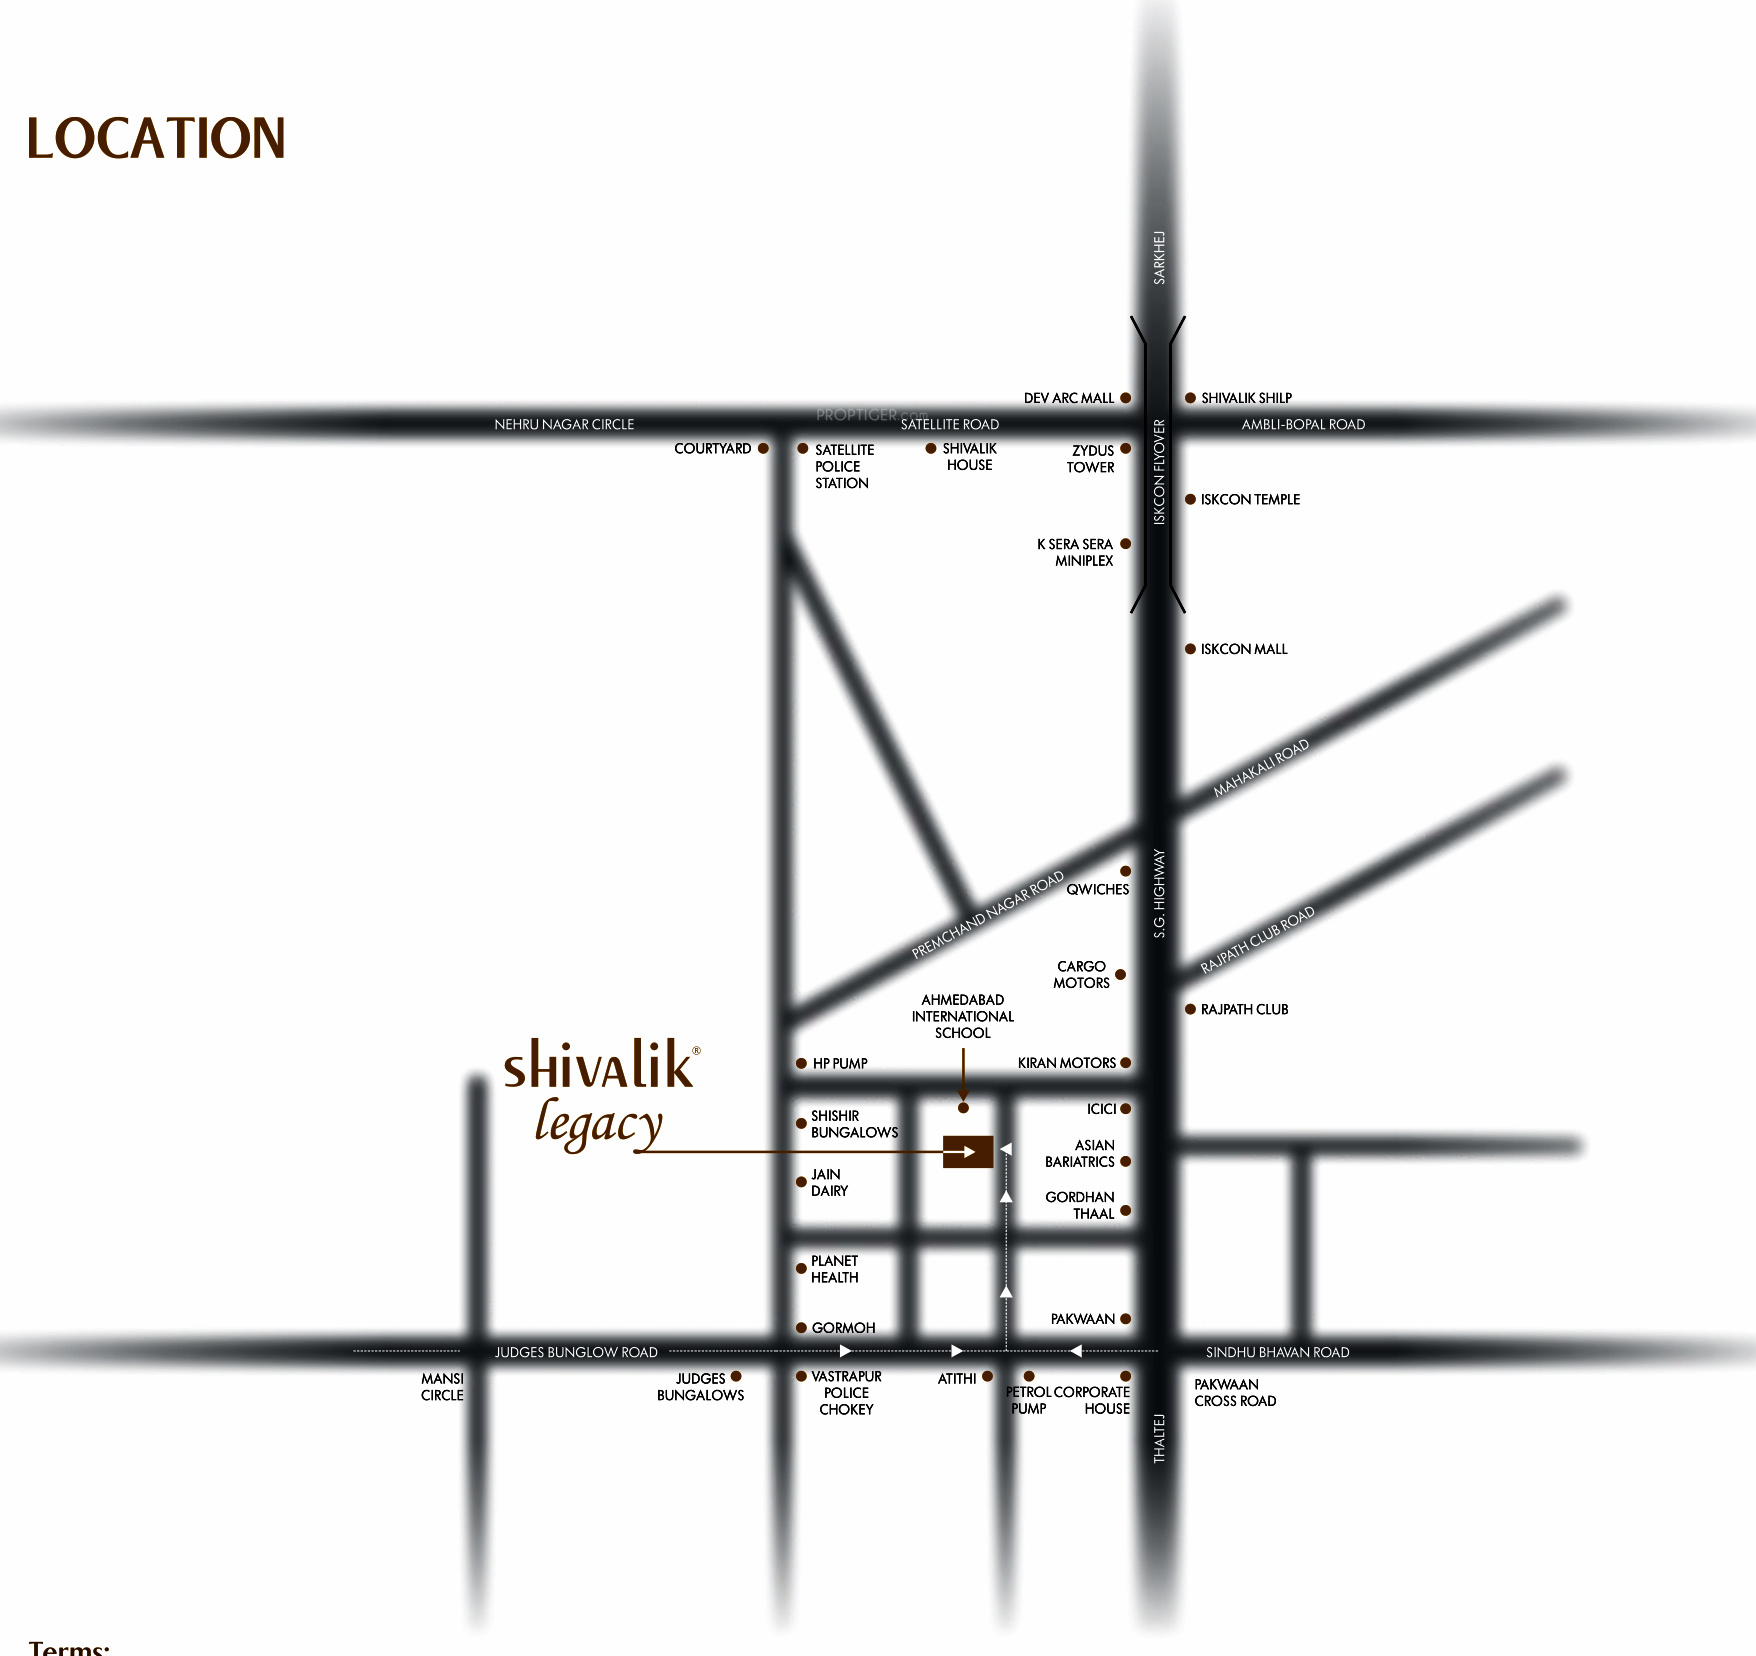 Shivalik Legacy in Bodakdev, Ahmedabad Price, Location